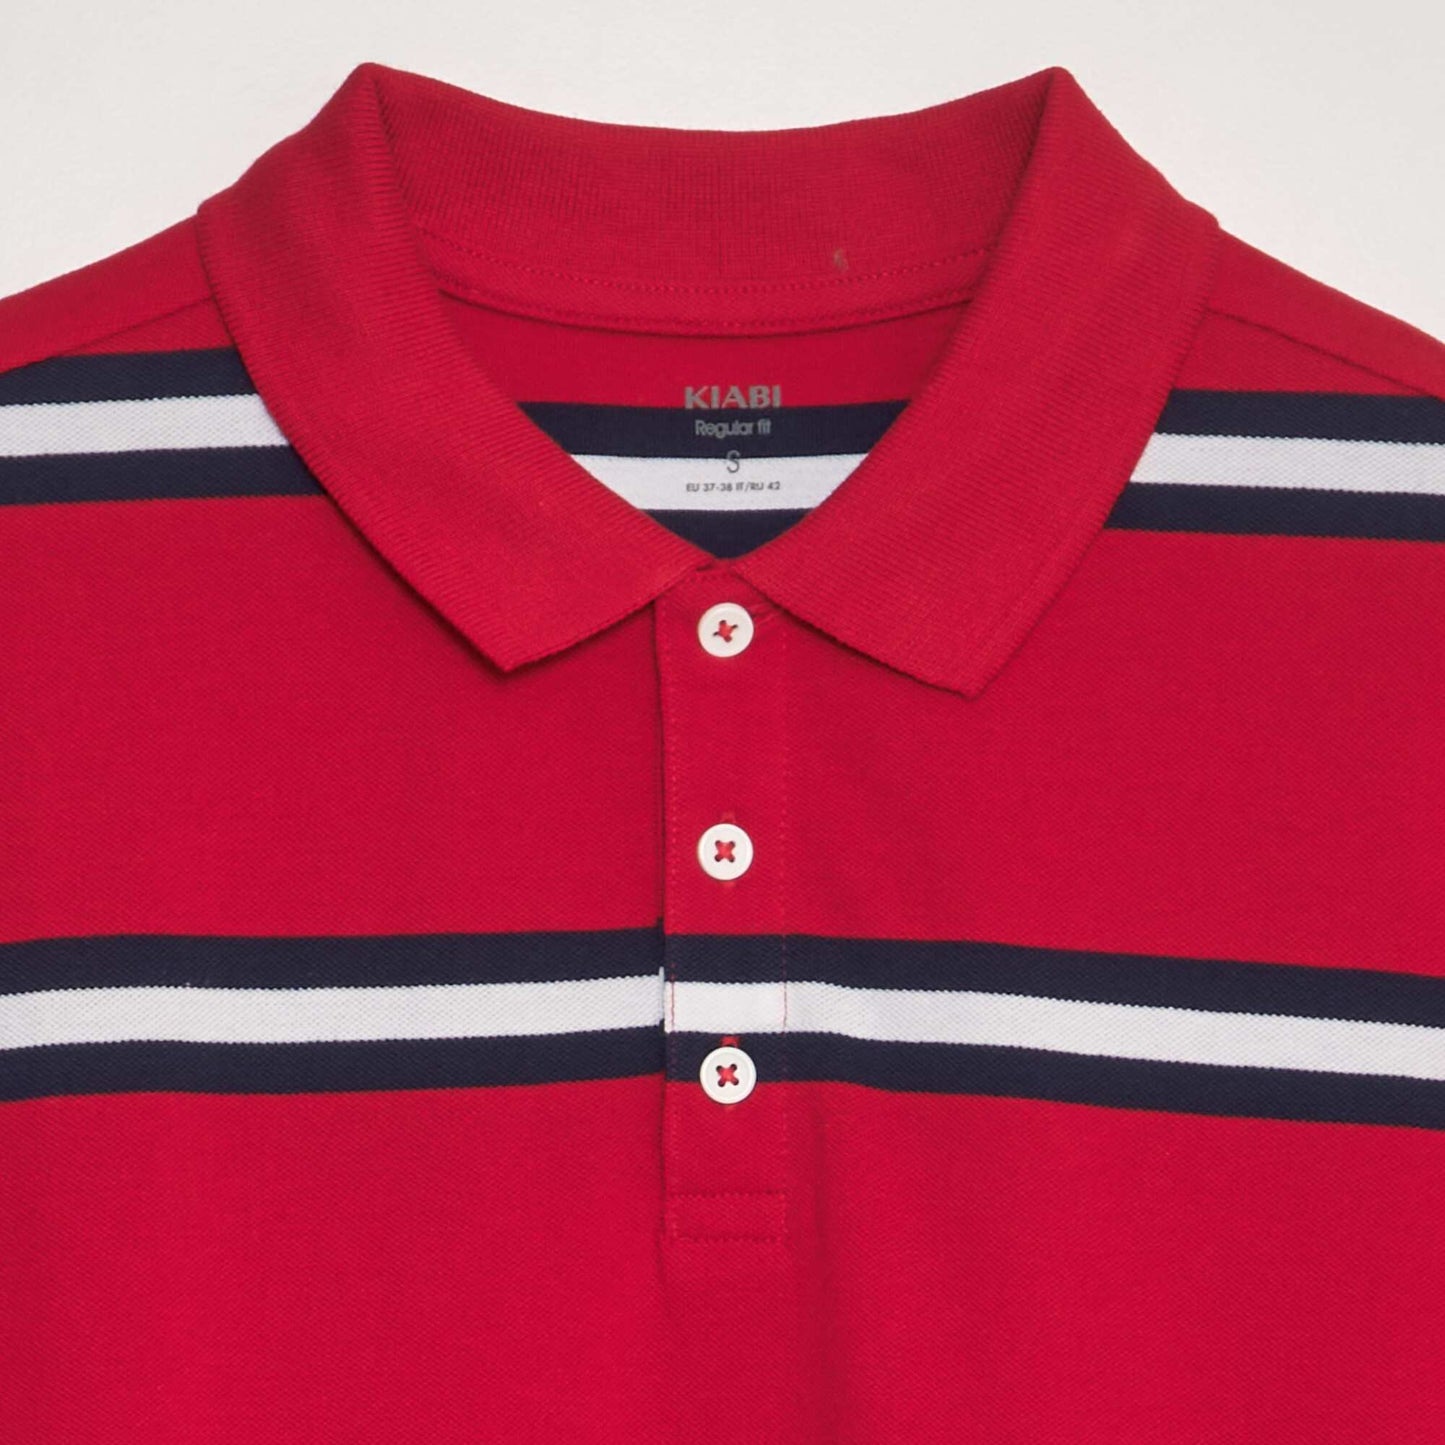 Cotton piqué striped polo shirt red